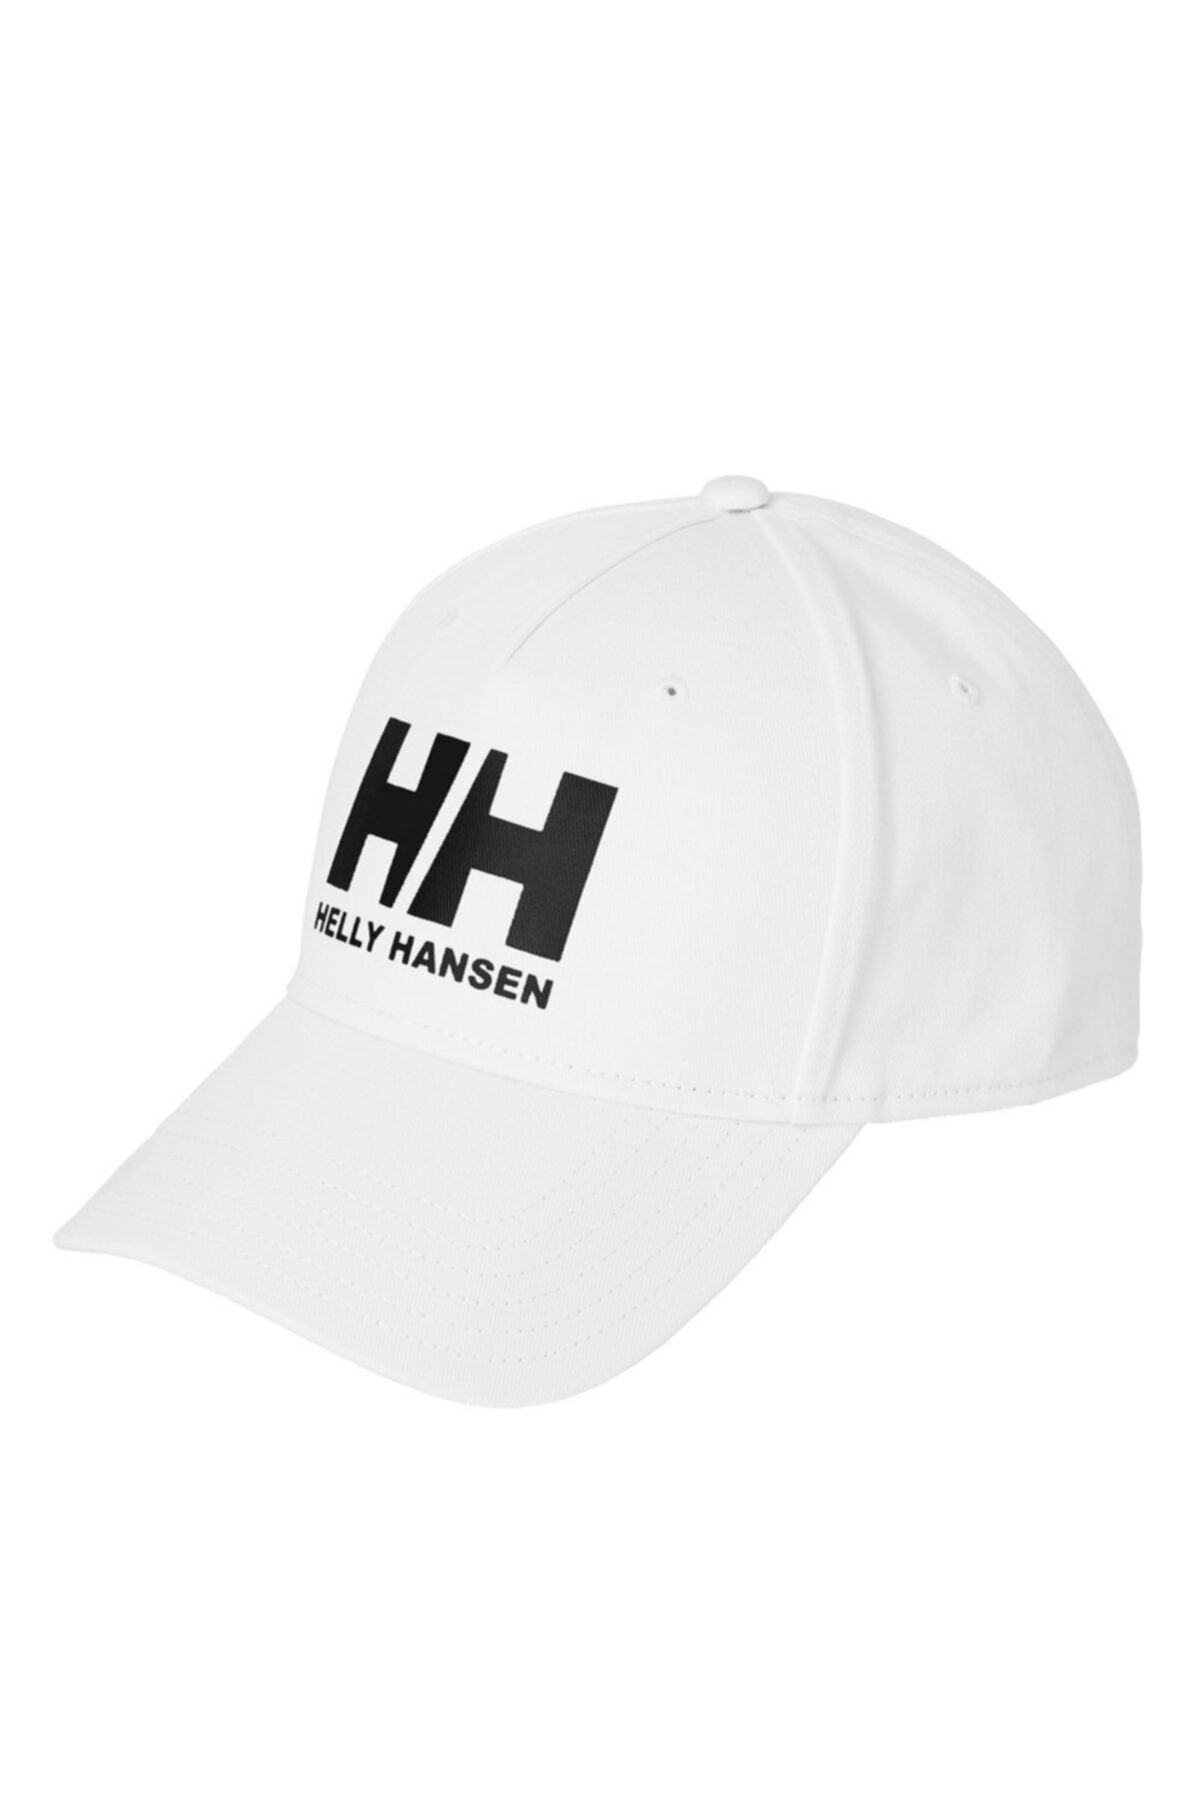 Helly Hansen Unisex Beyaz Ball Cap Şapka